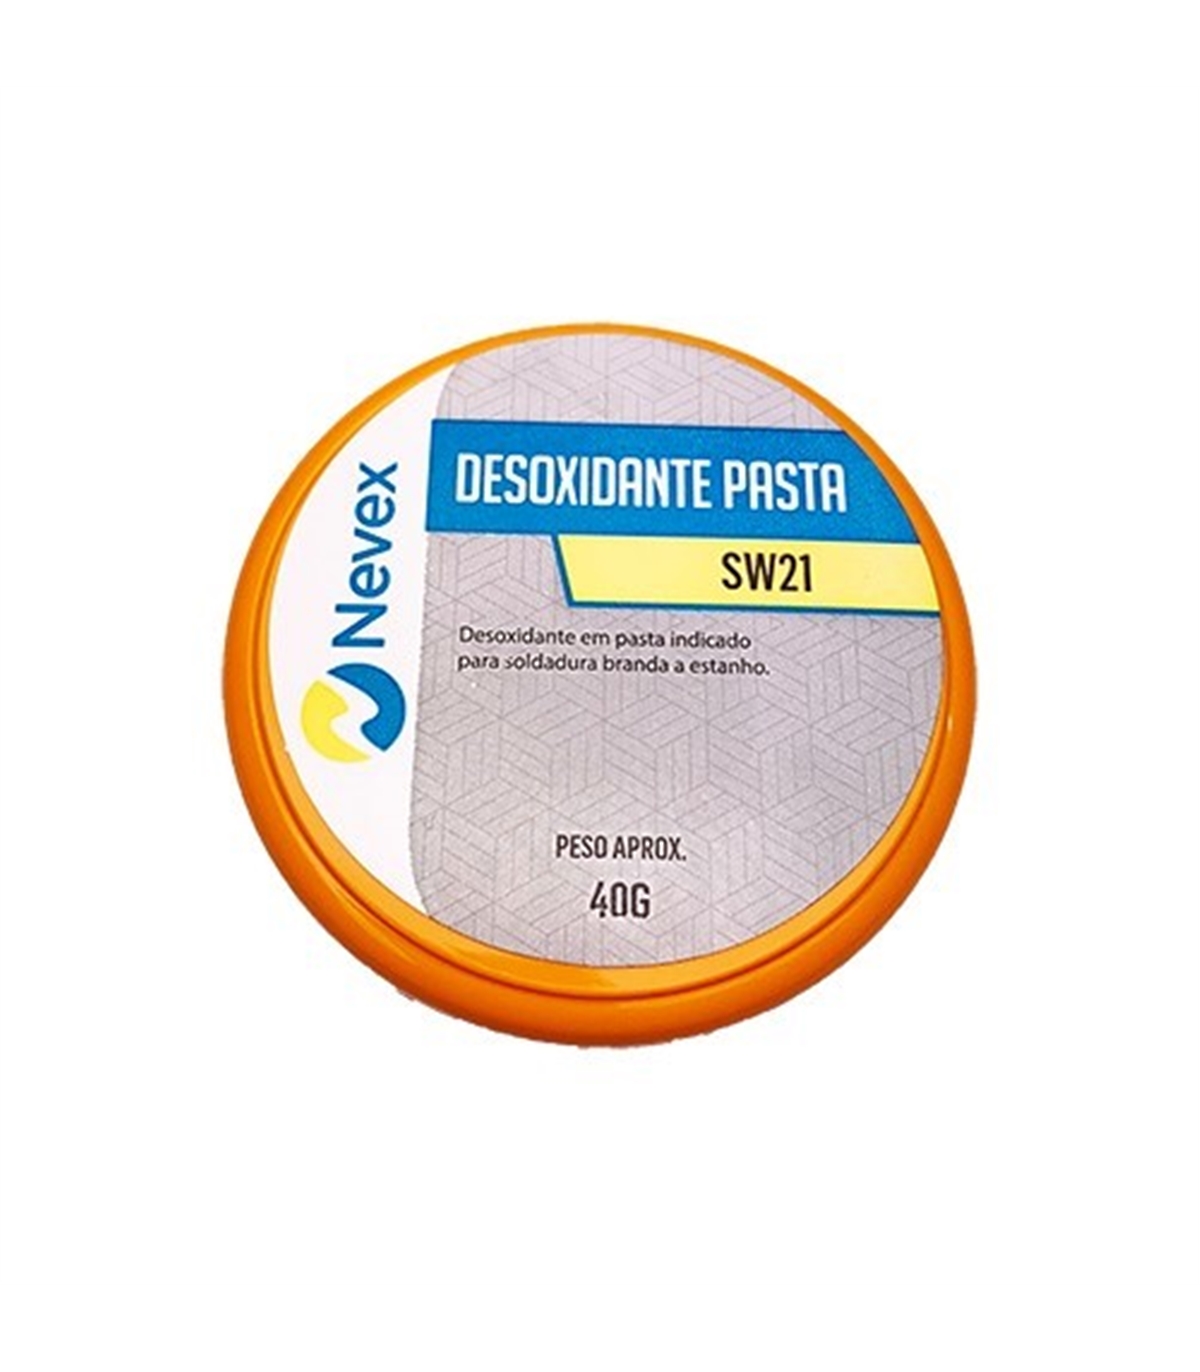 Fluxo Desoxidante em Pasta SW21 - 120g - Nevex